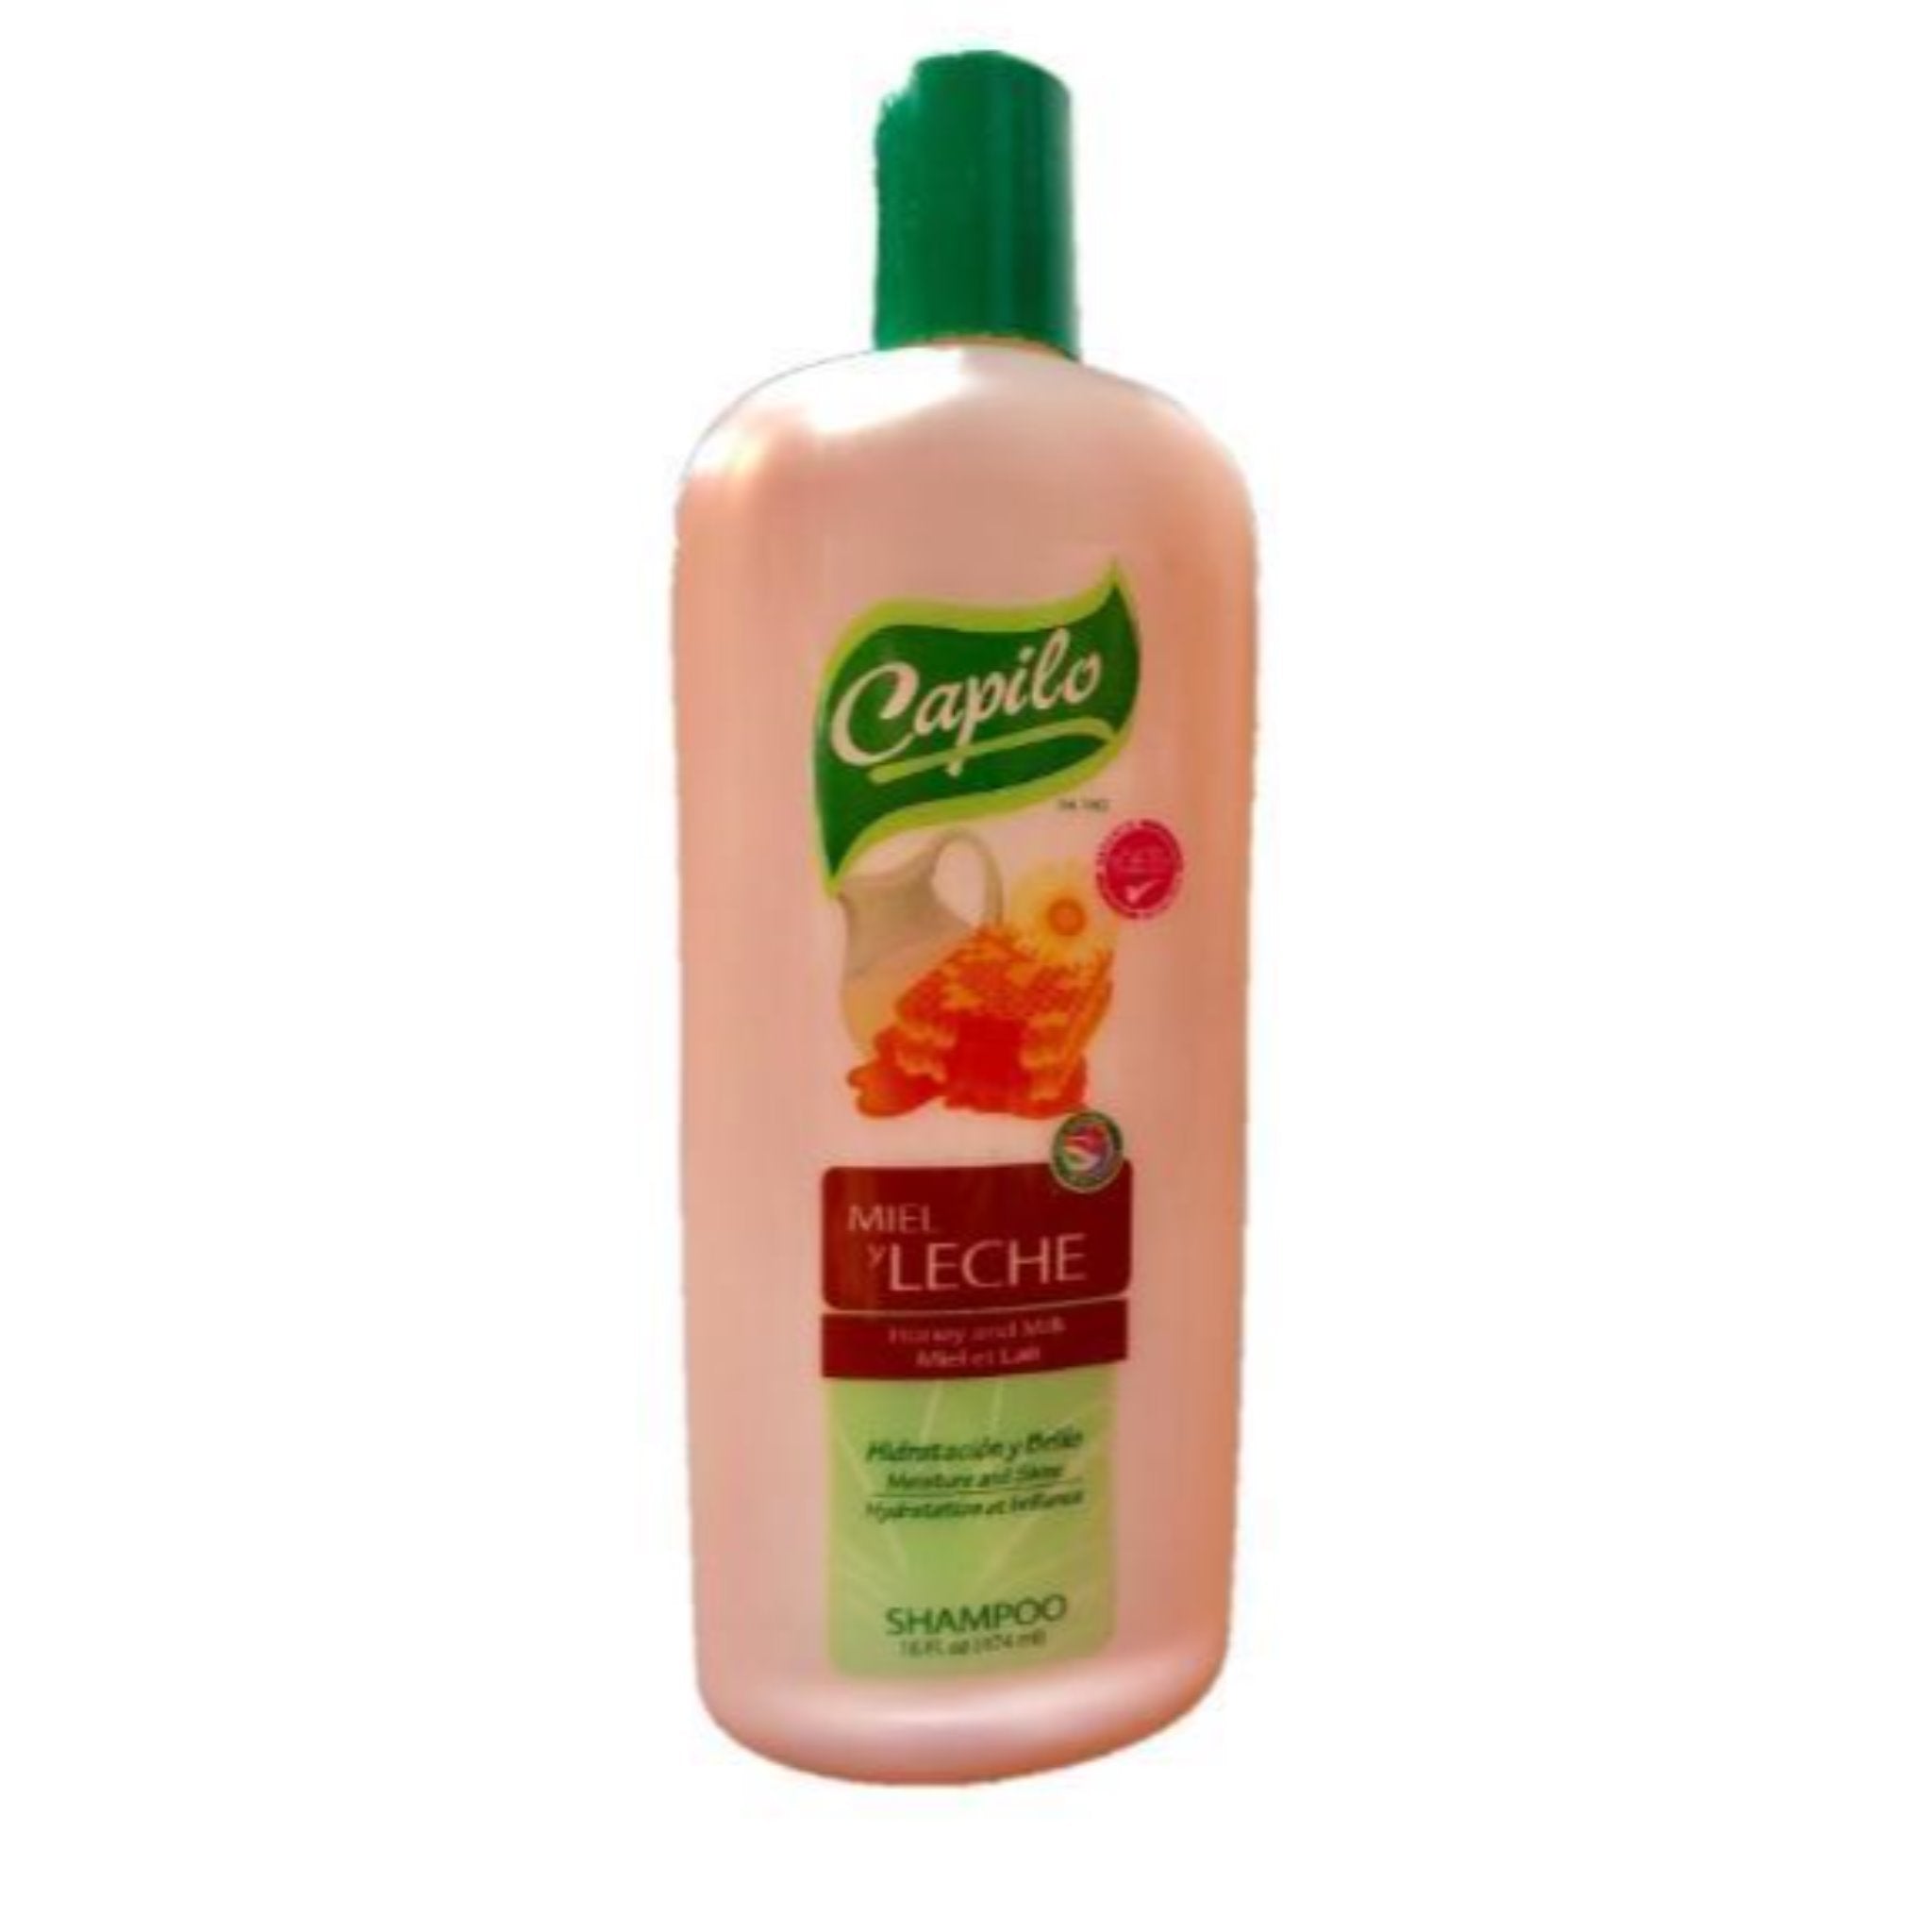 Capilo Milk & Honey Shampoo 16 oz